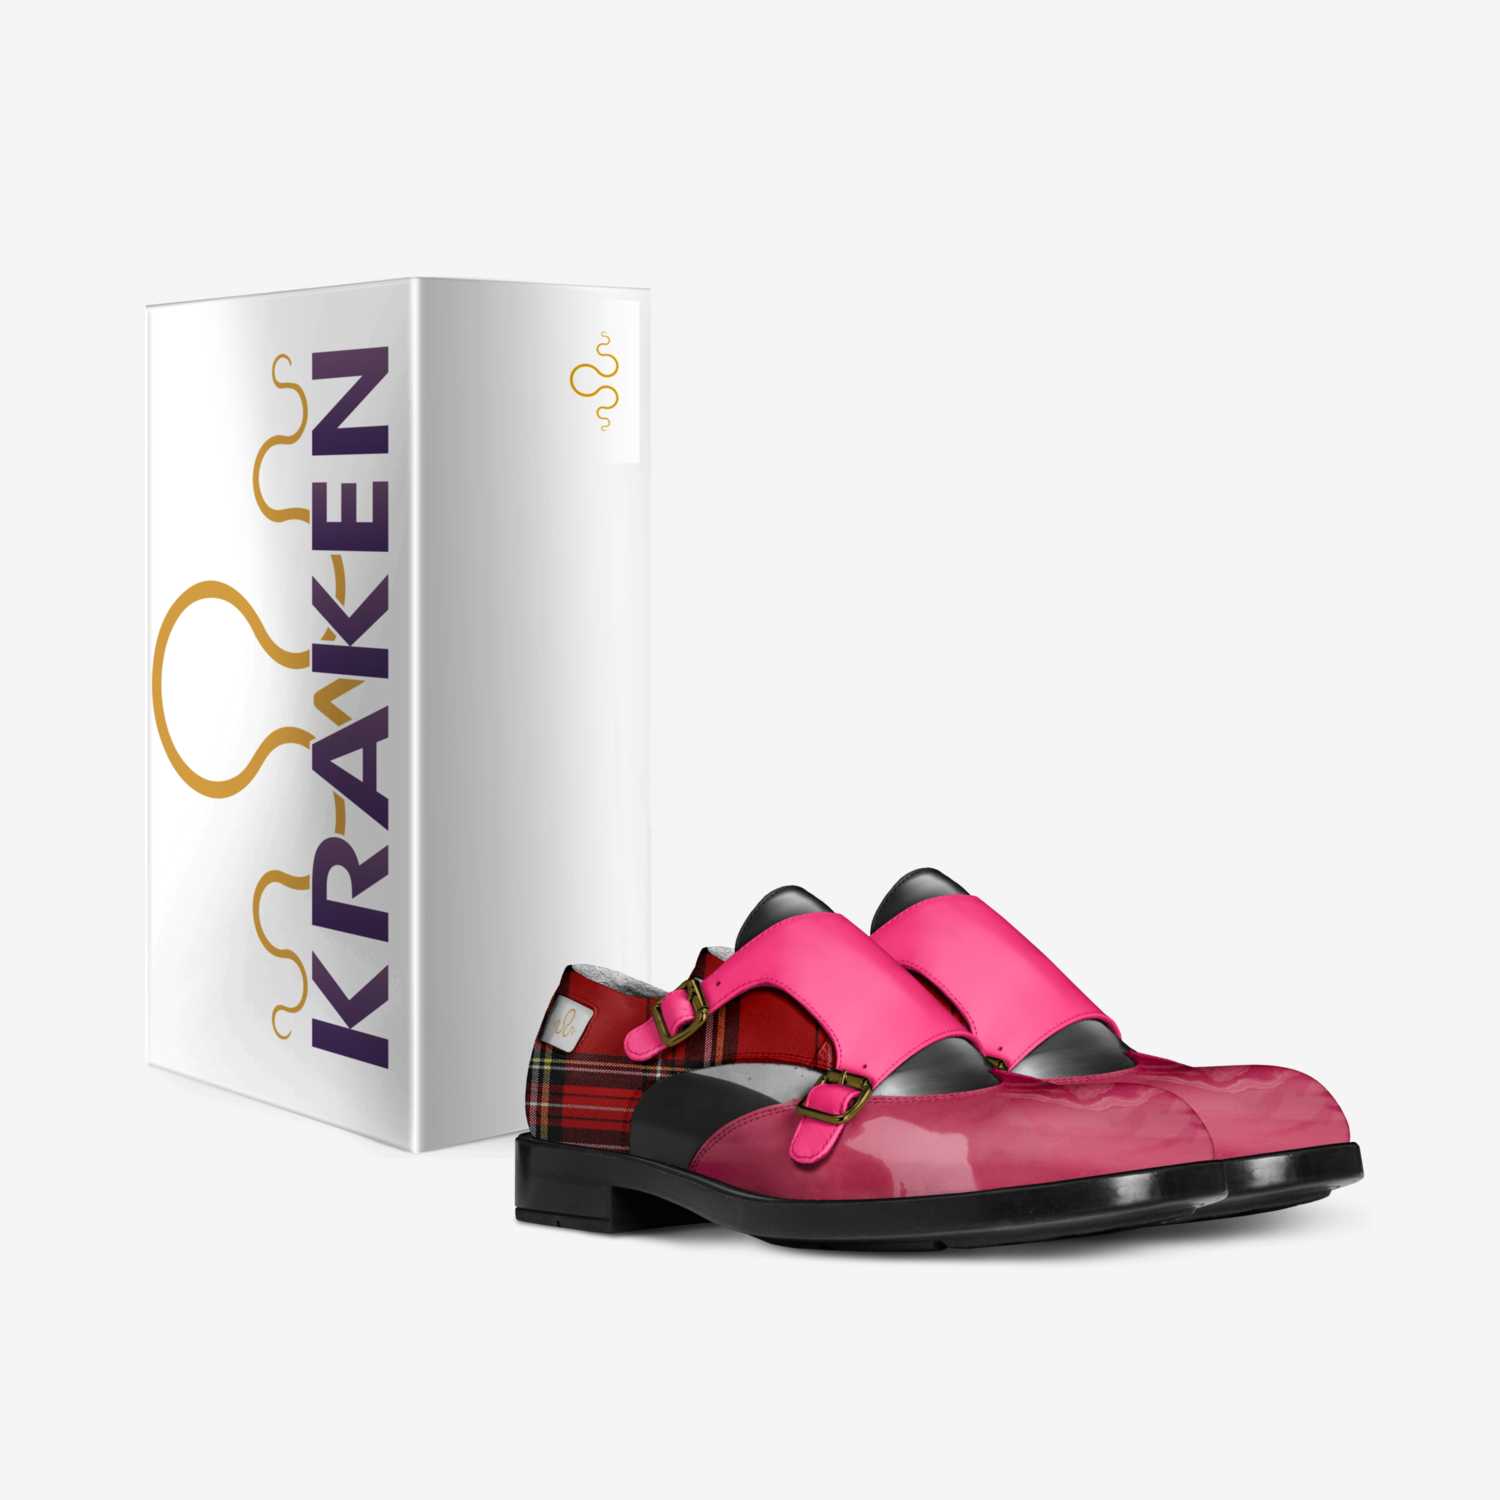 Kraken "987" custom made in Italy shoes by Carlos Segarra | Box view